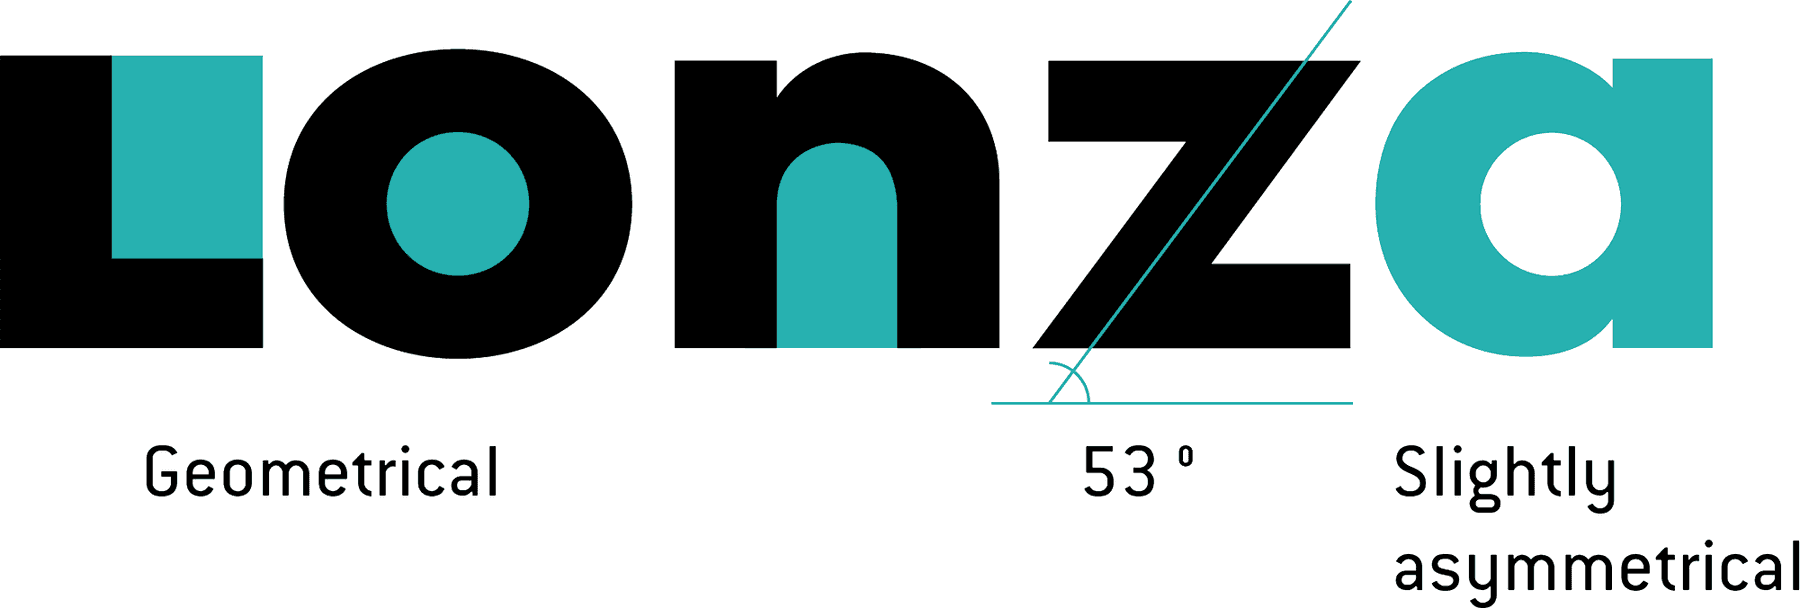 Lonza logo analysis